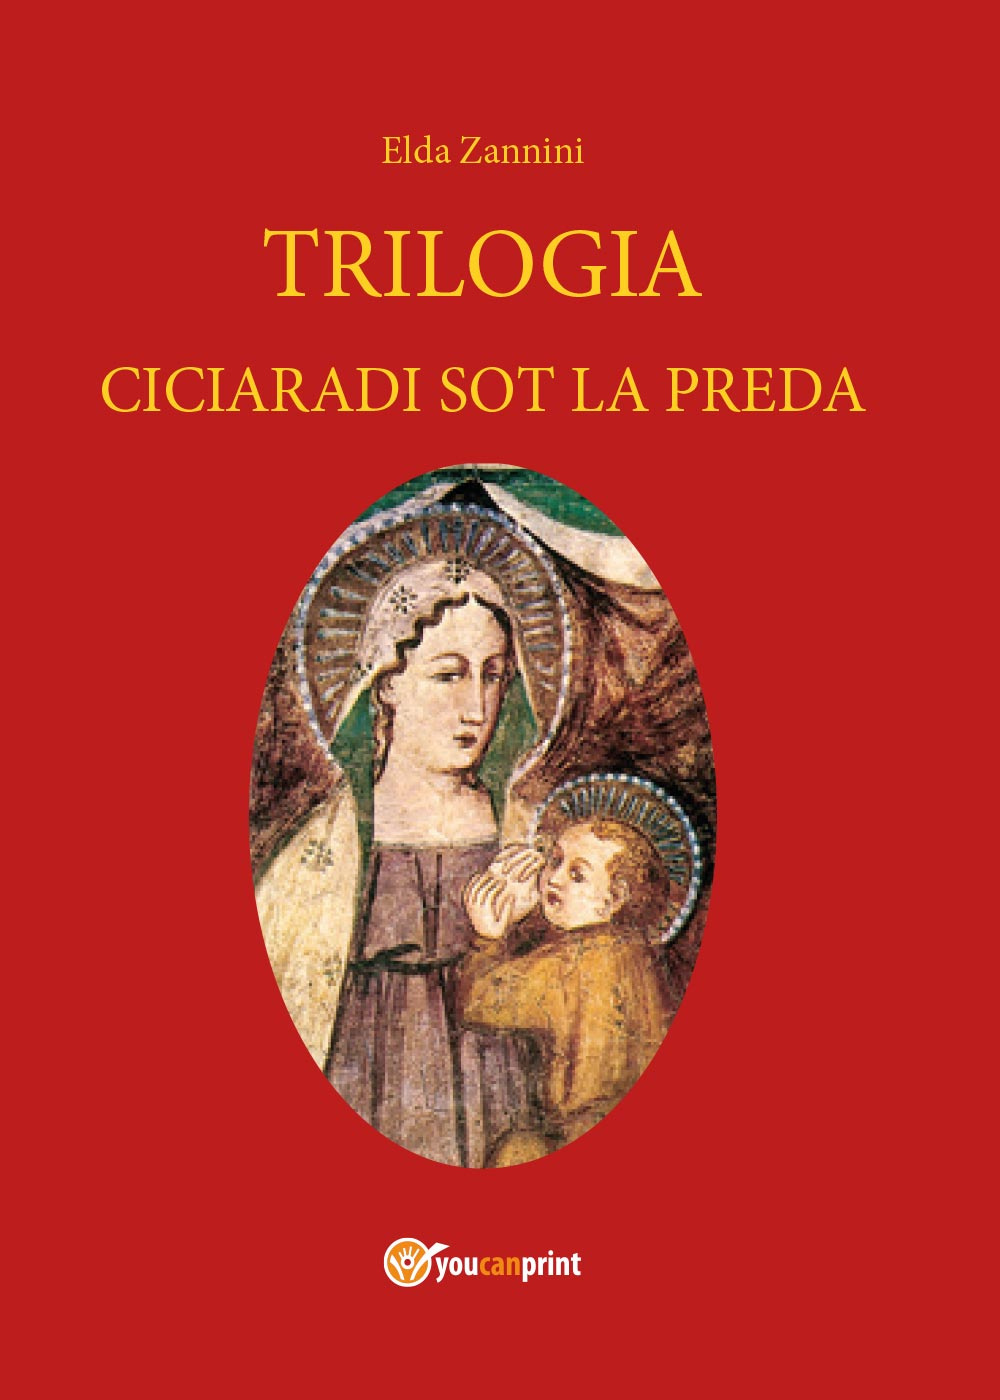 Trilogia. Testo reggiano e italiano